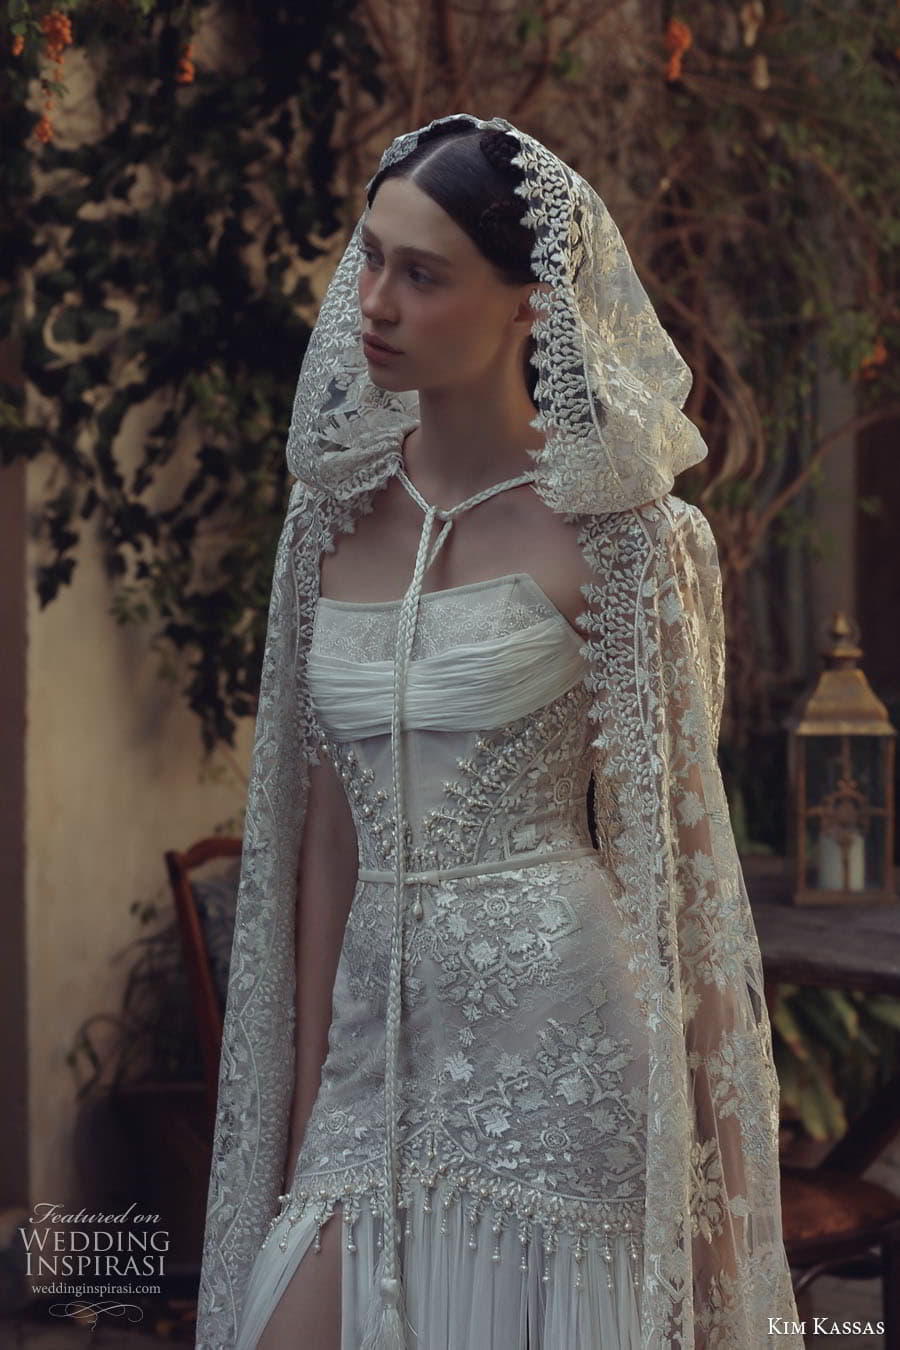 Kim Kassas wedding dress with cloak